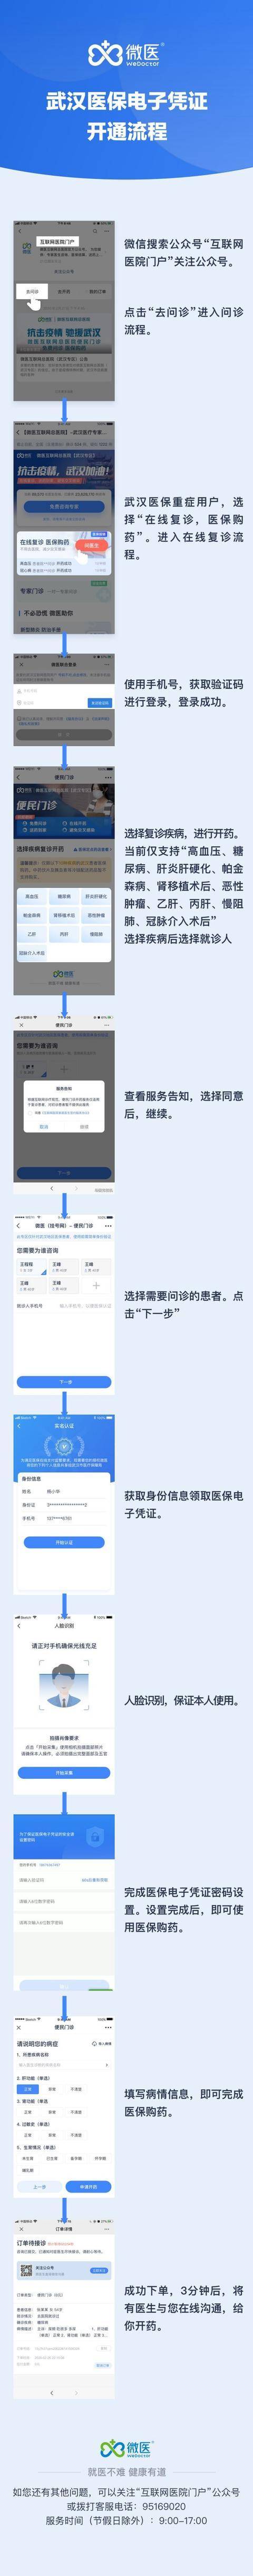 武汉电子医保凭证则怎么申请 武汉电子医保凭证开通流程